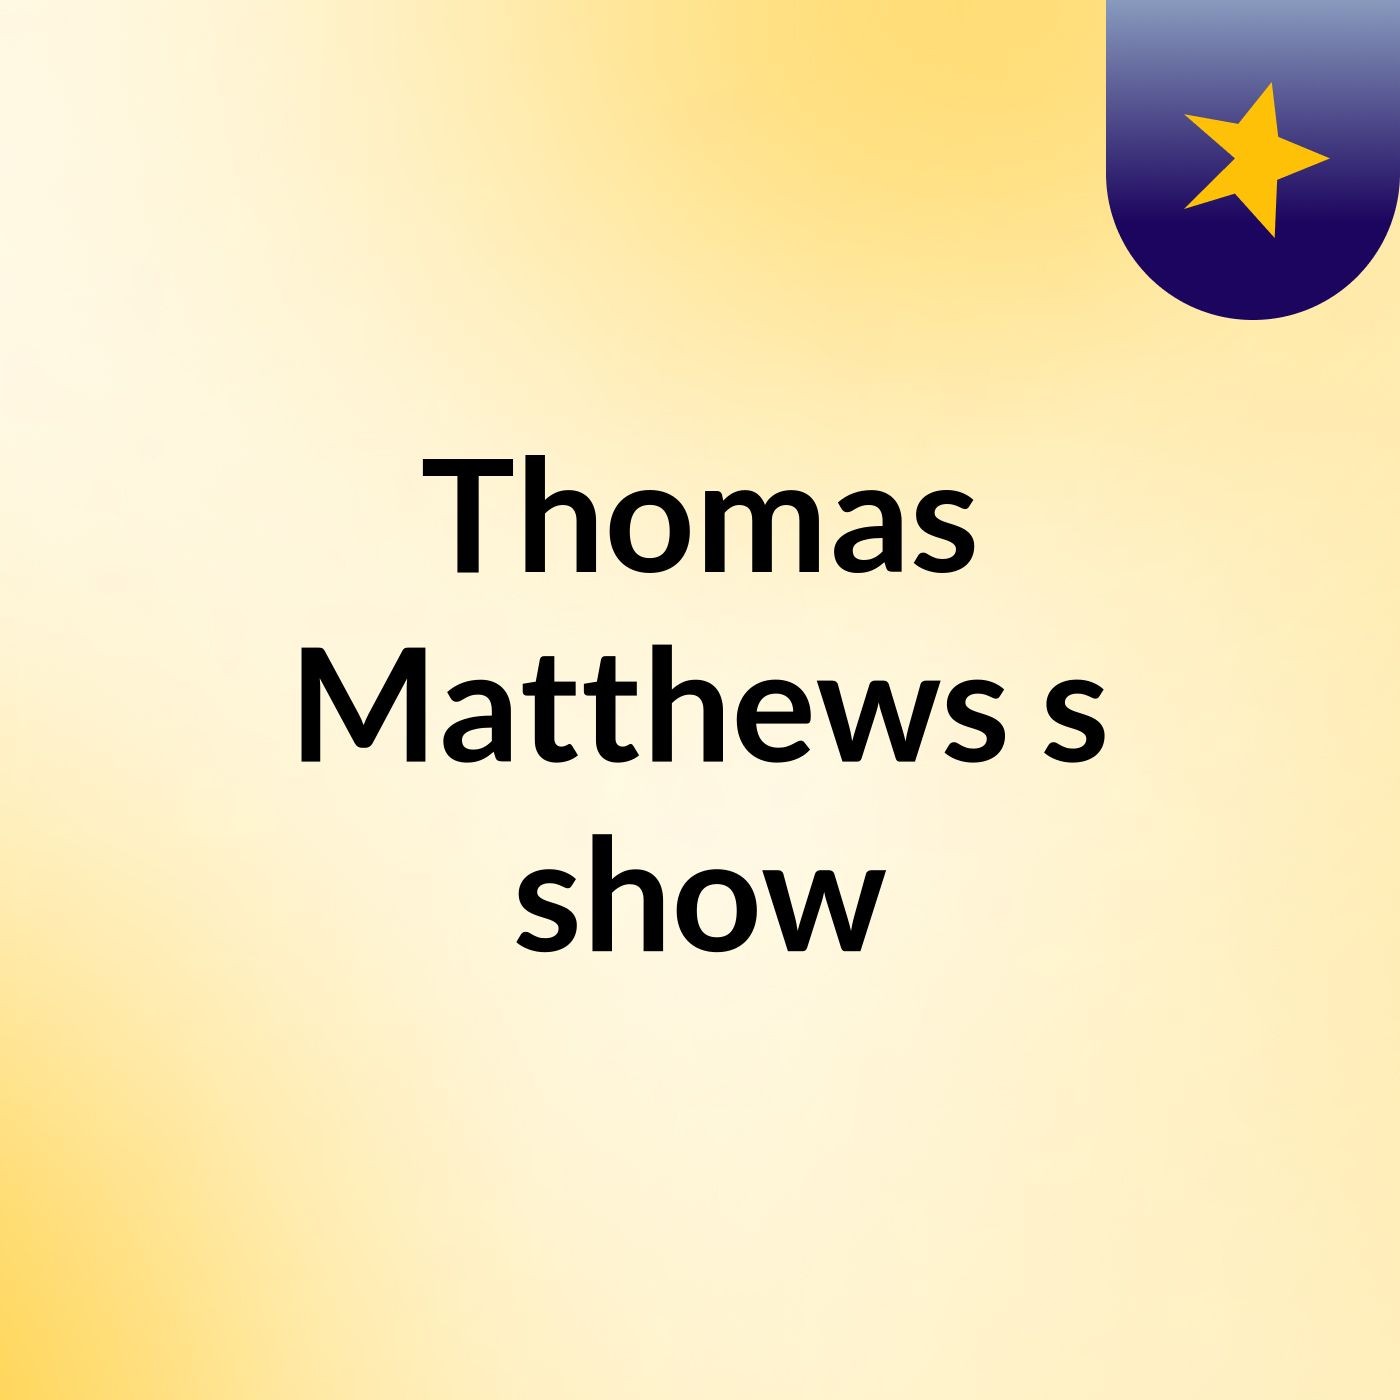 Thomas Matthews's show